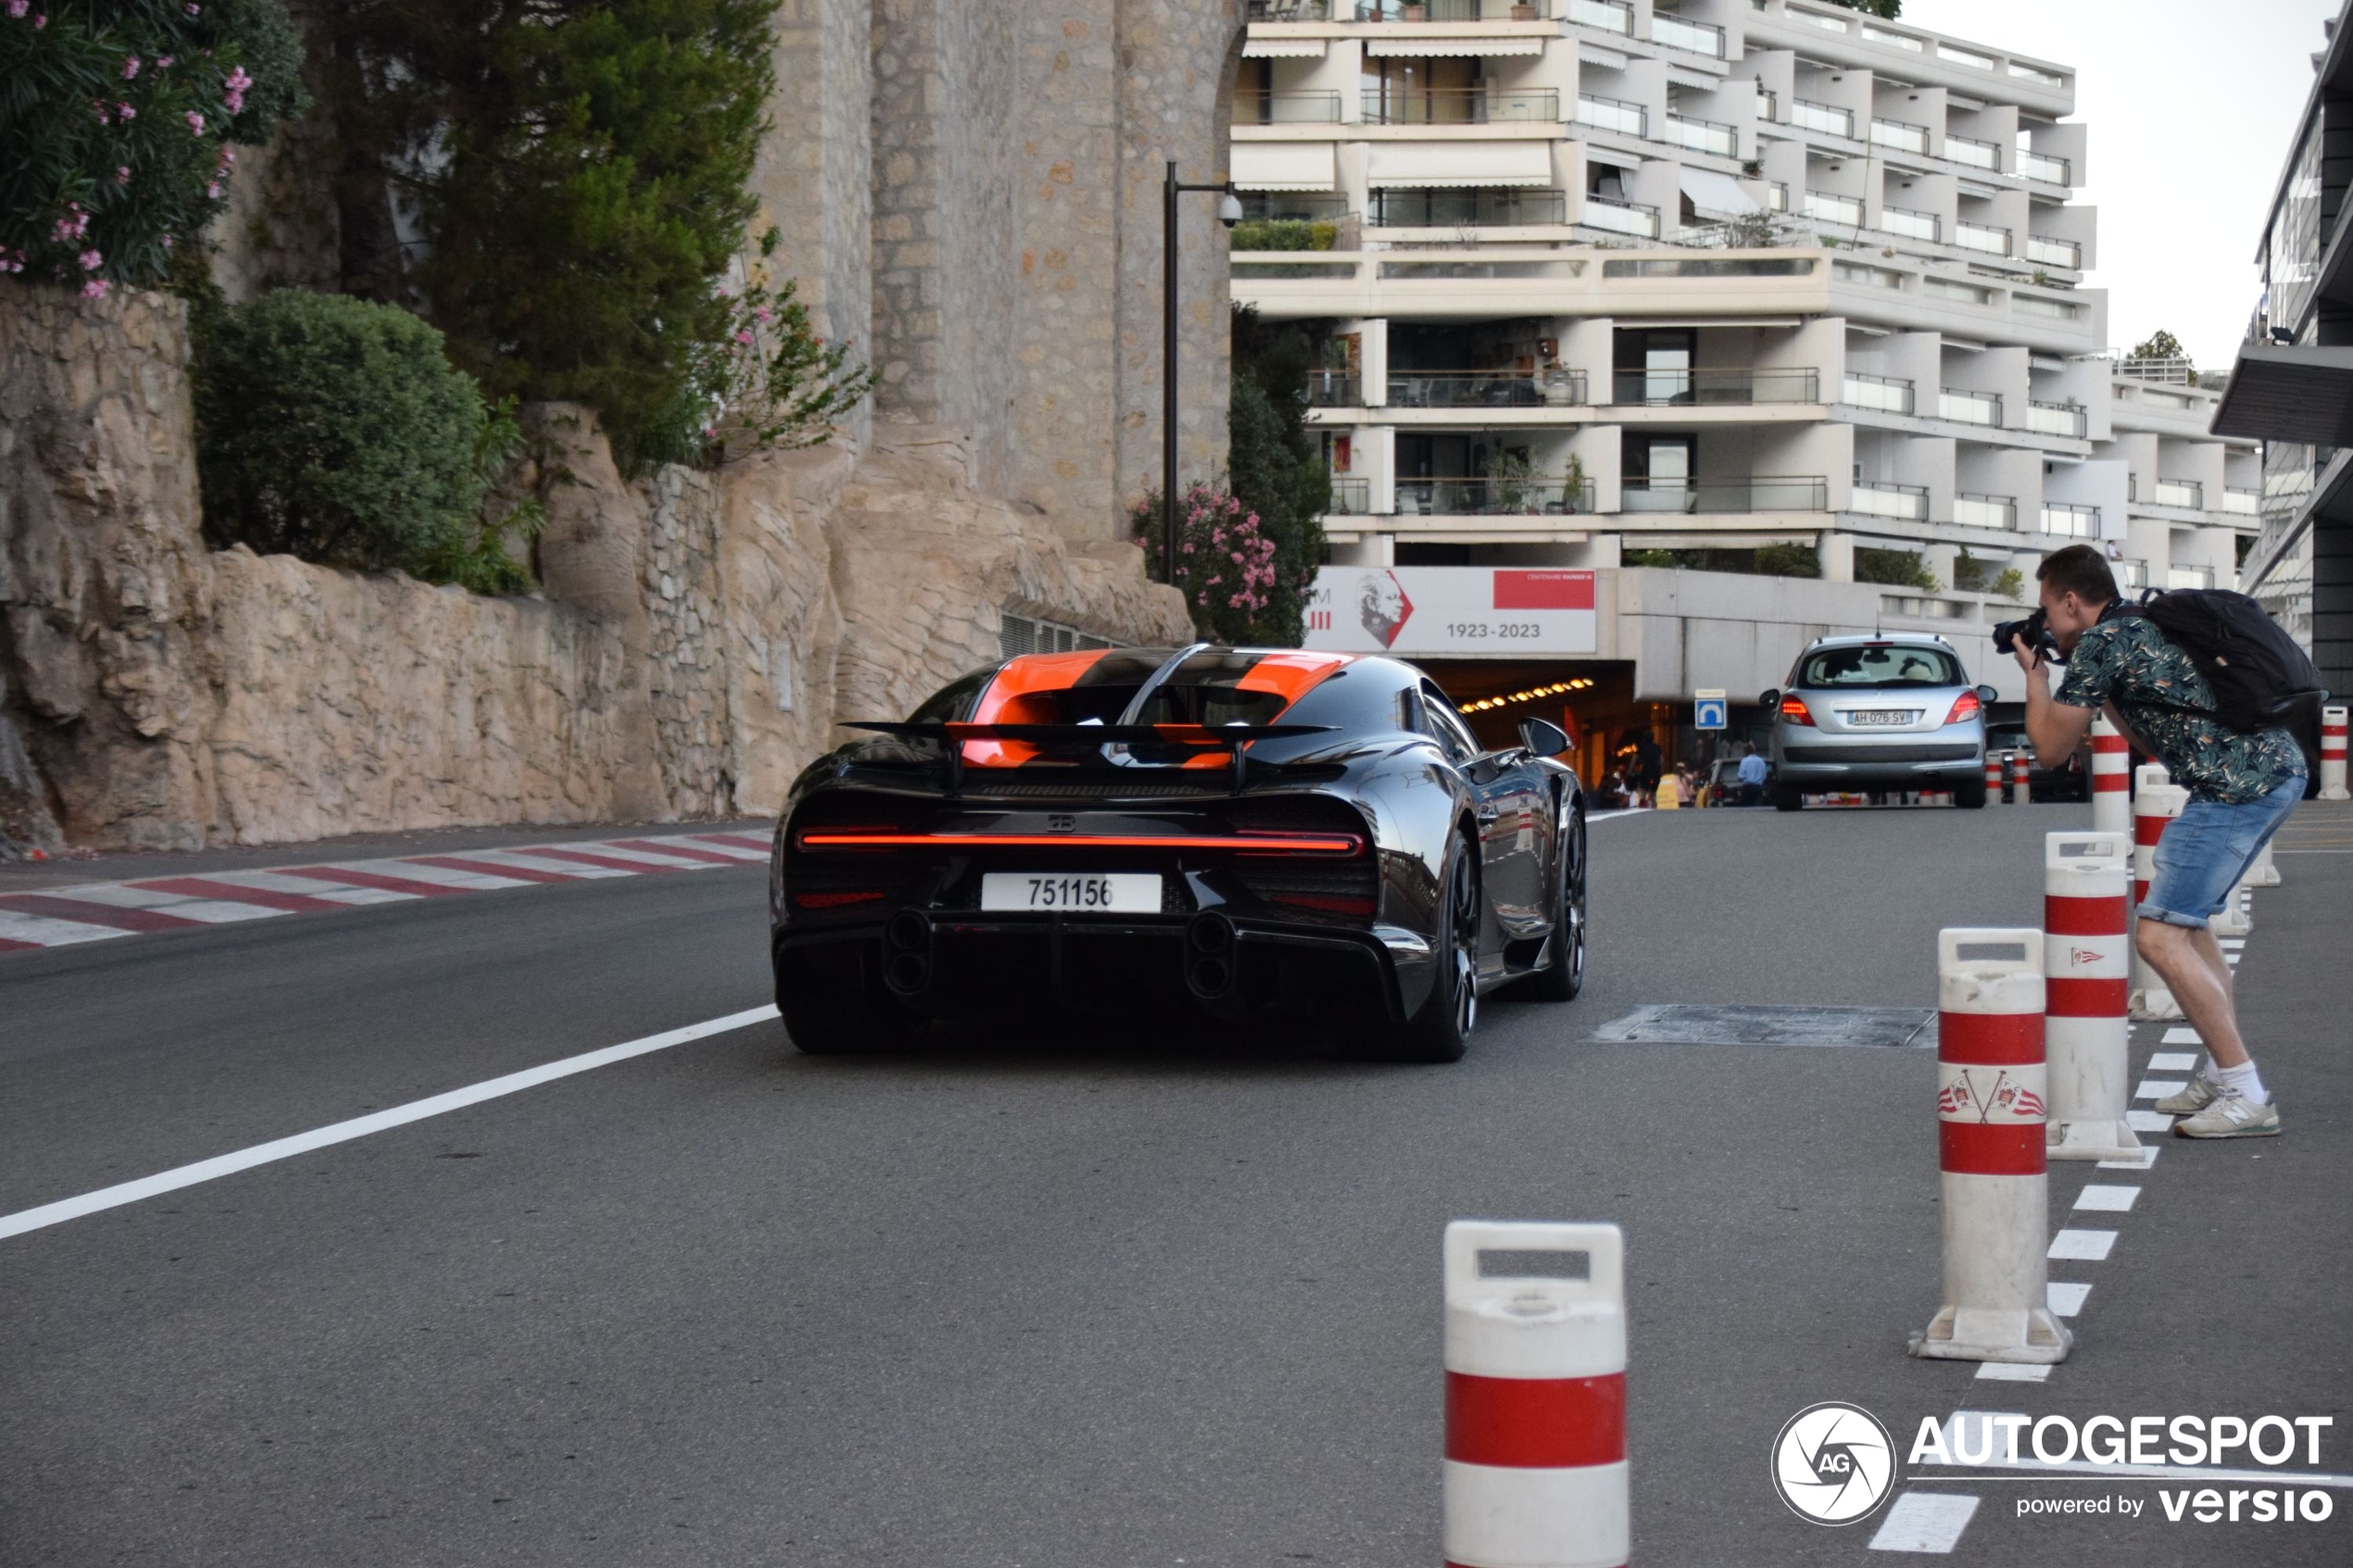 A new Chiron Super Sport 300+ in Monaco